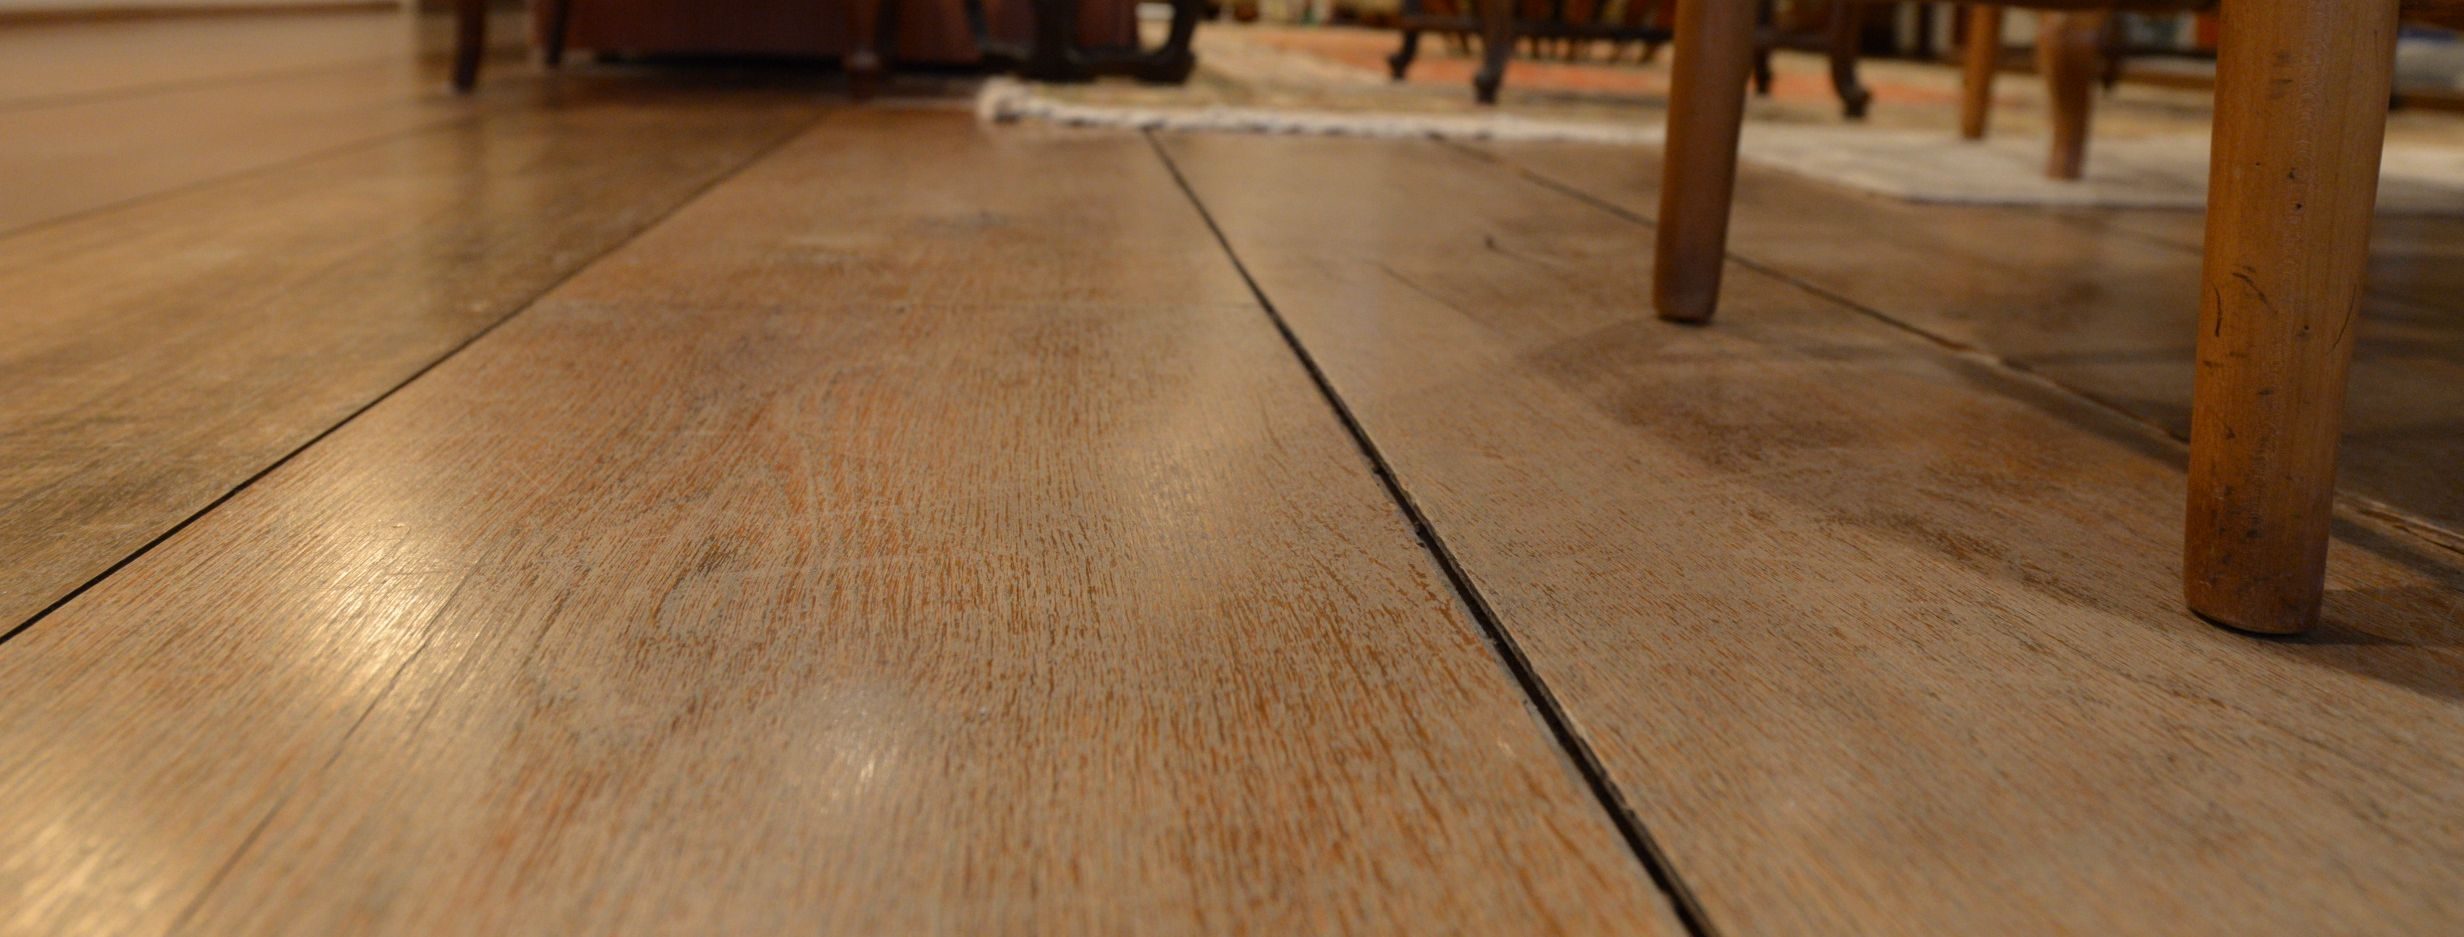 wide-wood-flooring|wide-wood-flooring